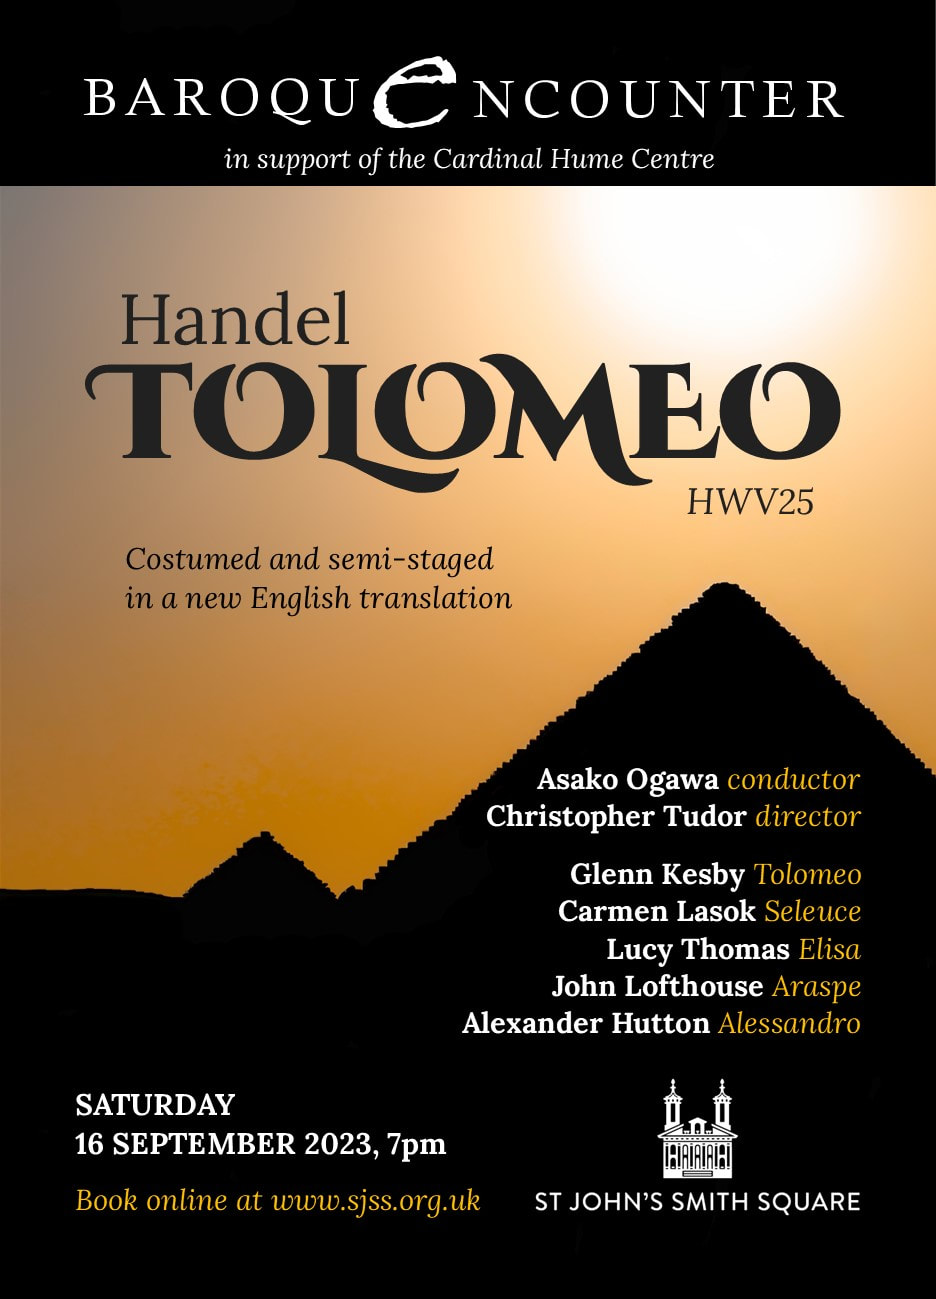 Flier for Handel's Tolomeo